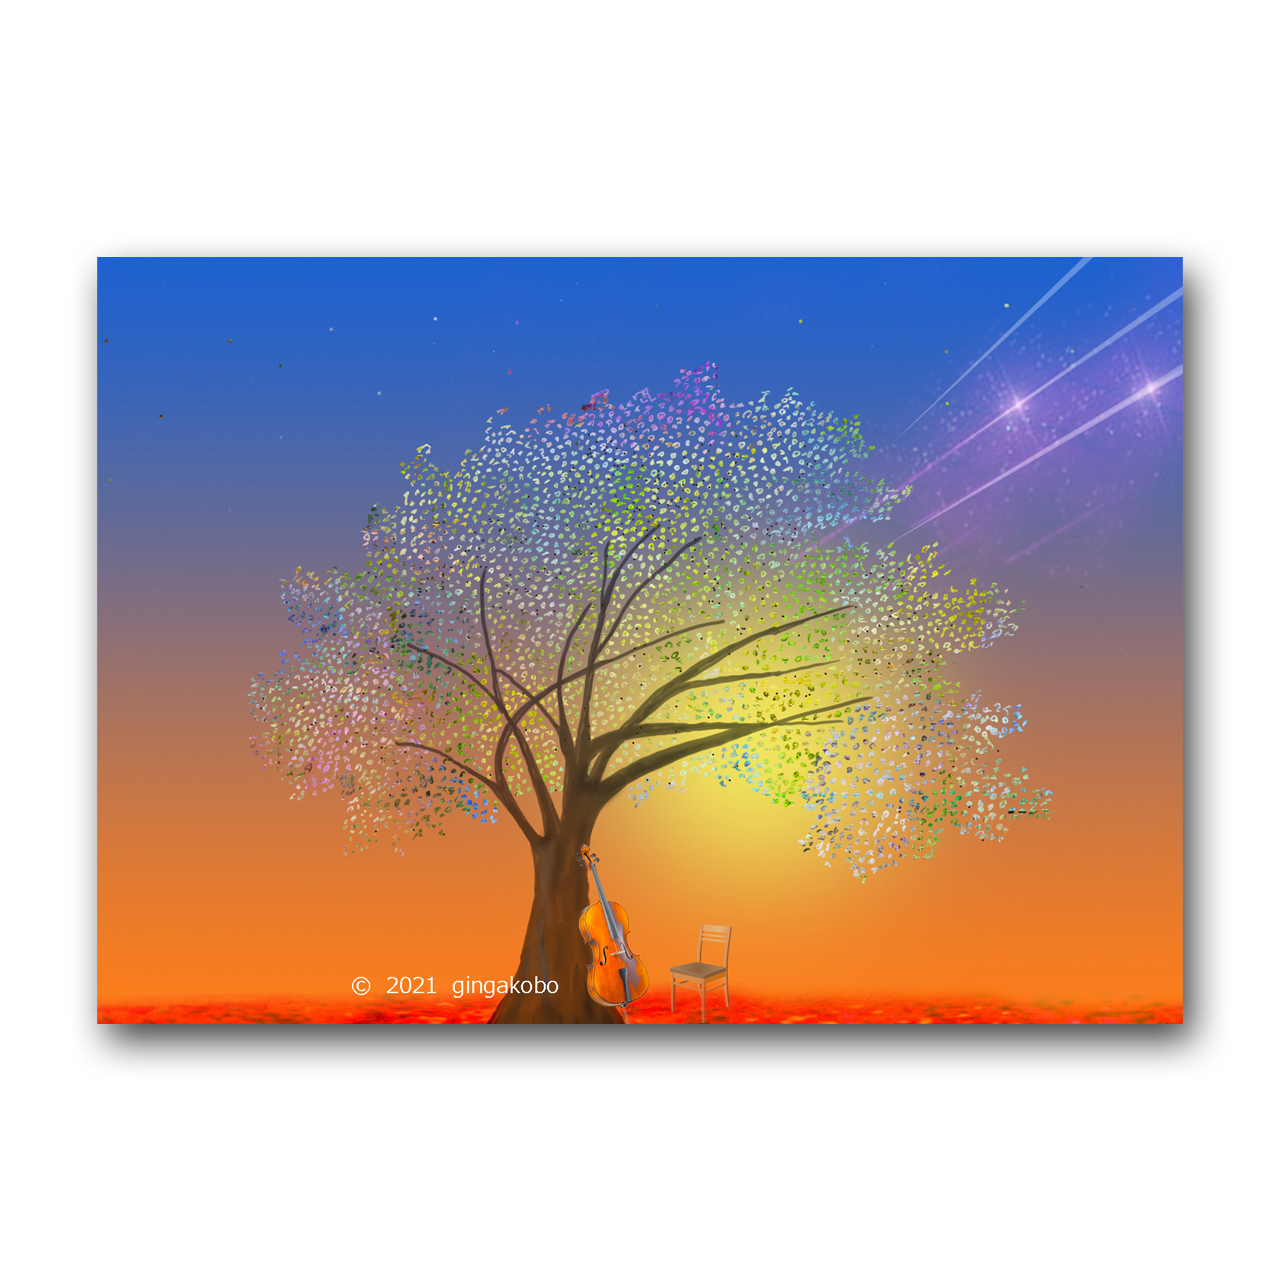 星呼吸して樹になる ほっこり癒しのイラストa4サイズポスター No 791 Iichi ハンドメイド クラフト作品 手仕事品の通販